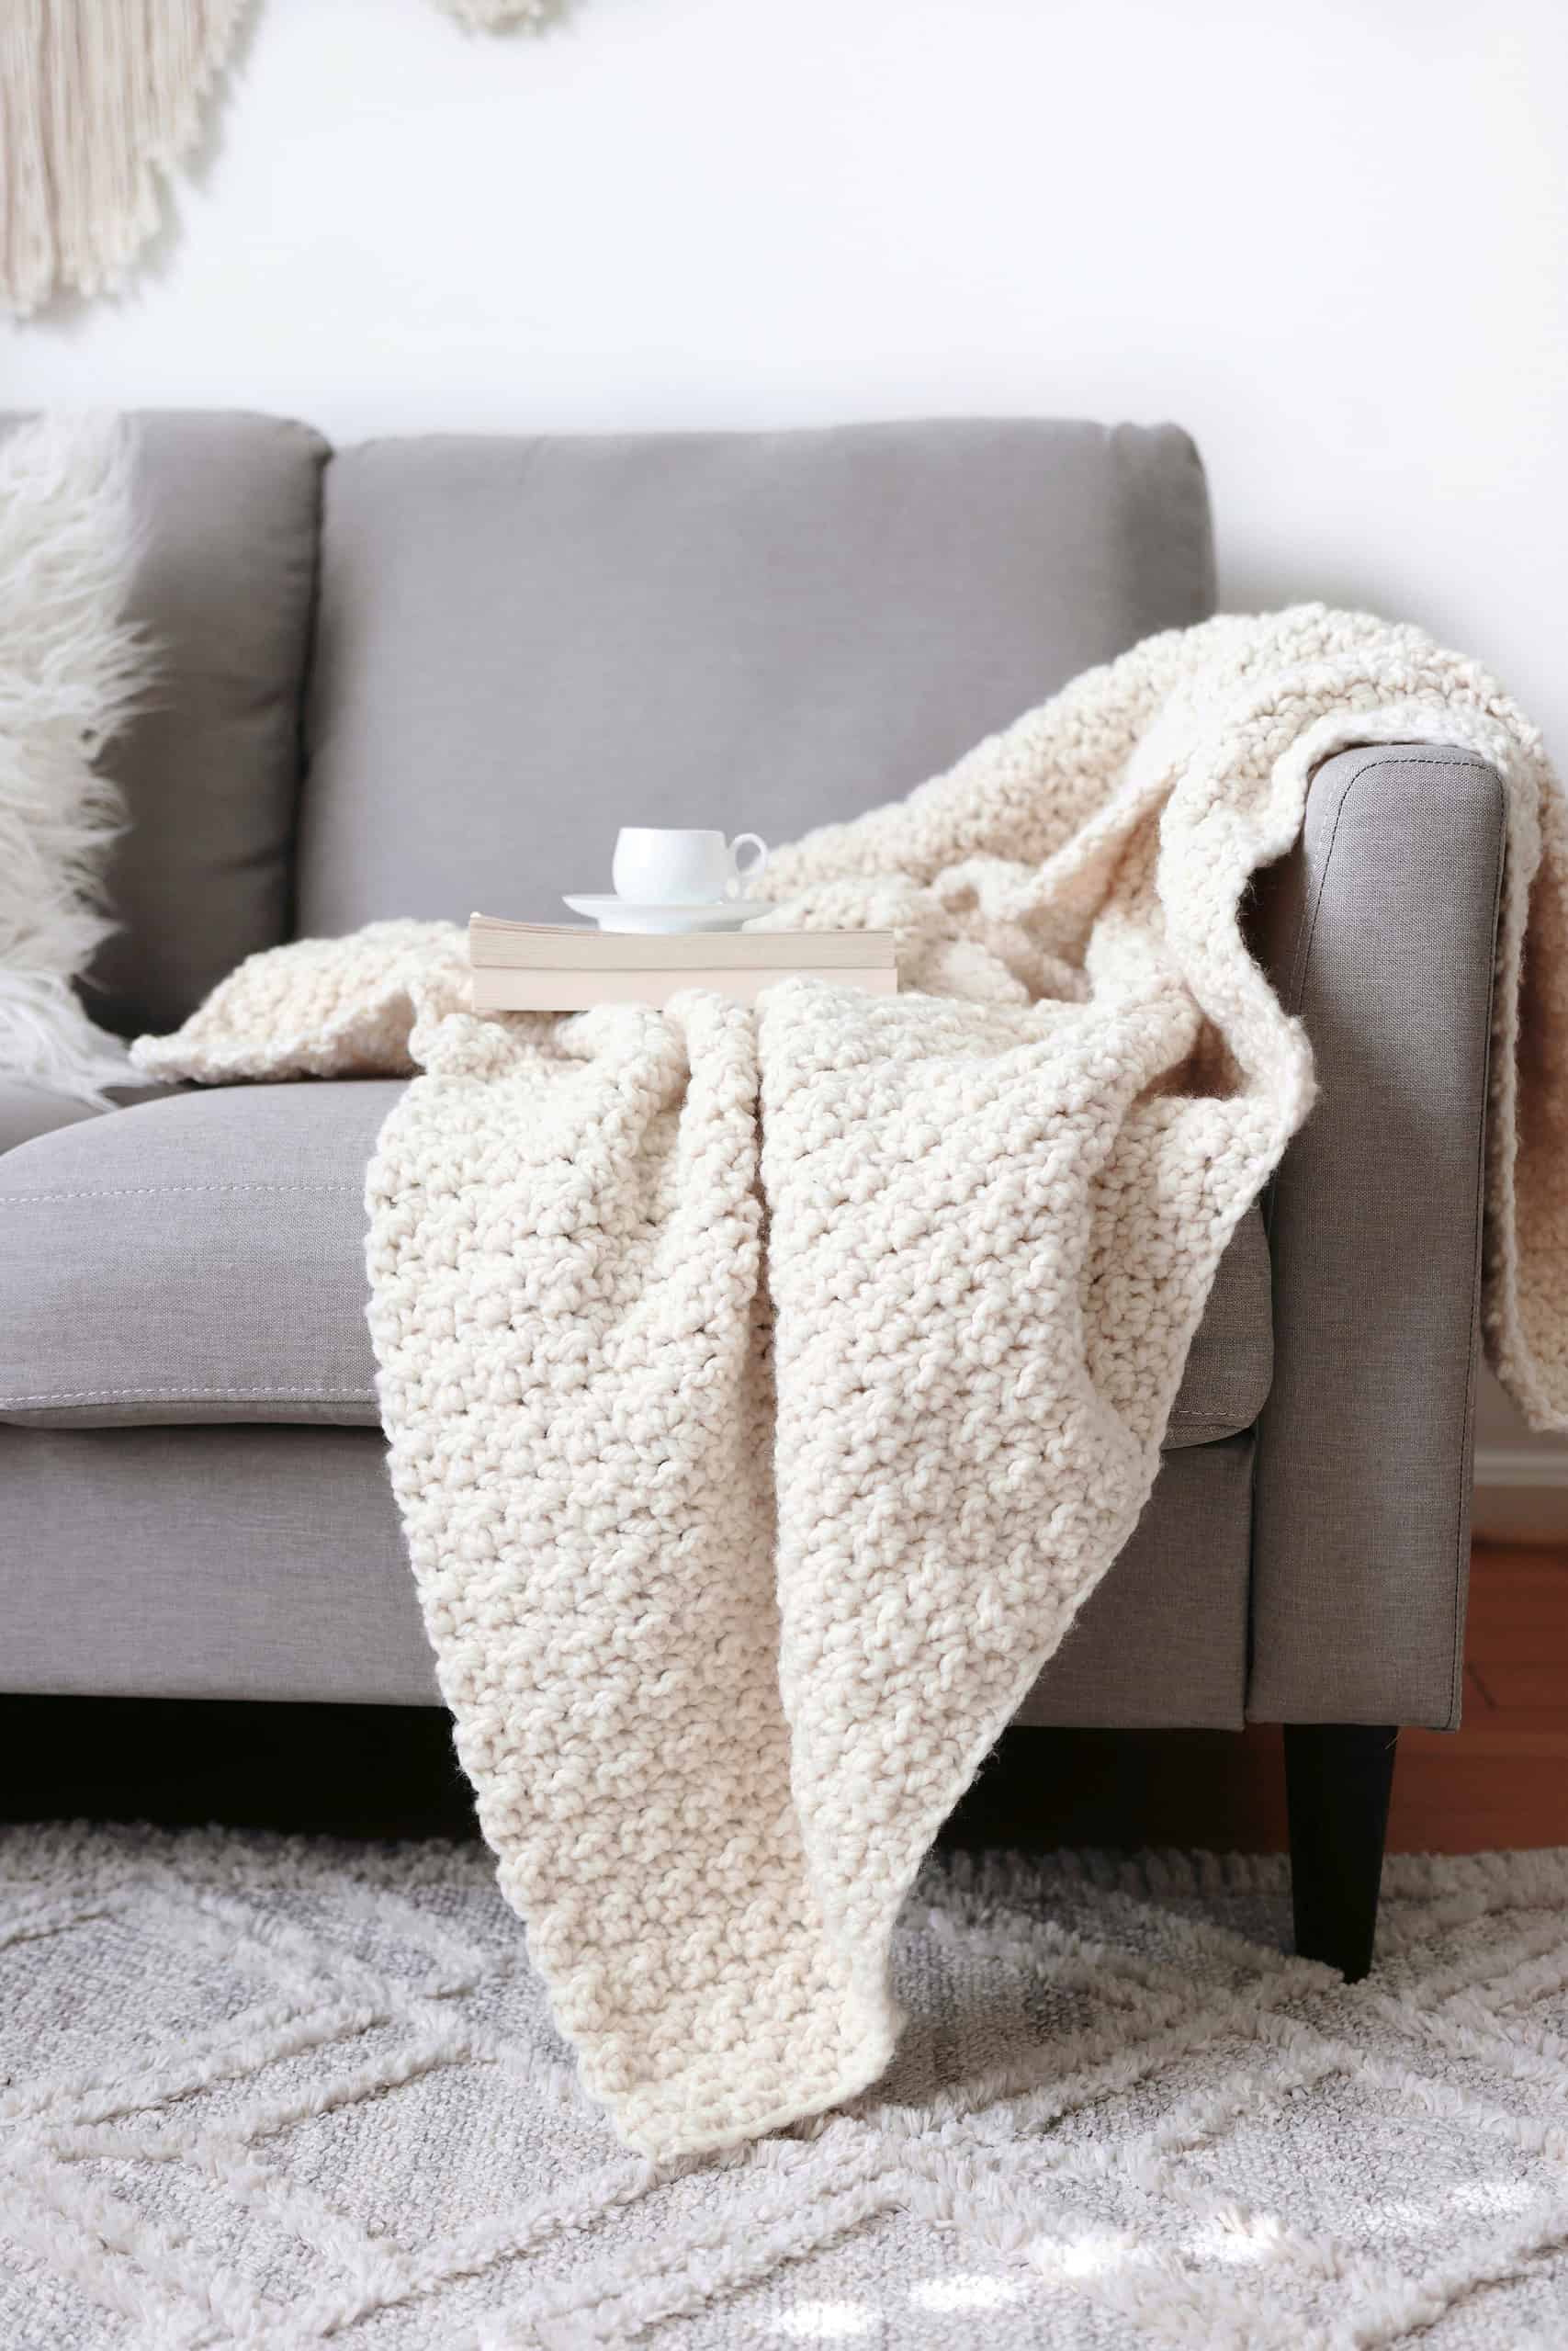 The Home Blanket Crochet Pattern